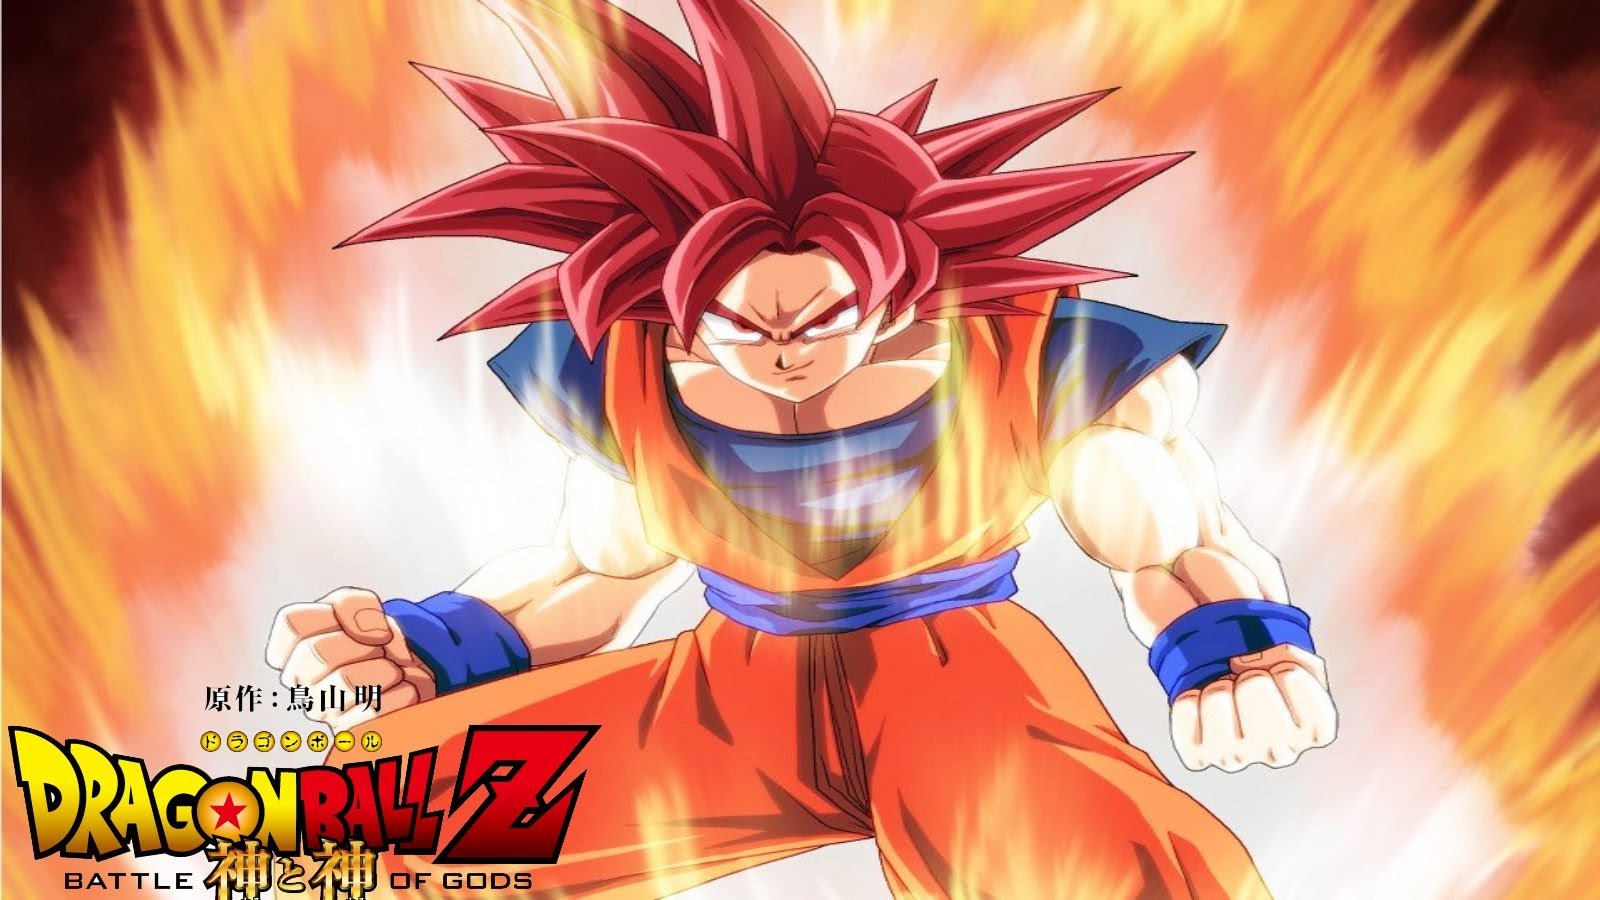 Gods Super Saiyan God Goku New Battle Of Series